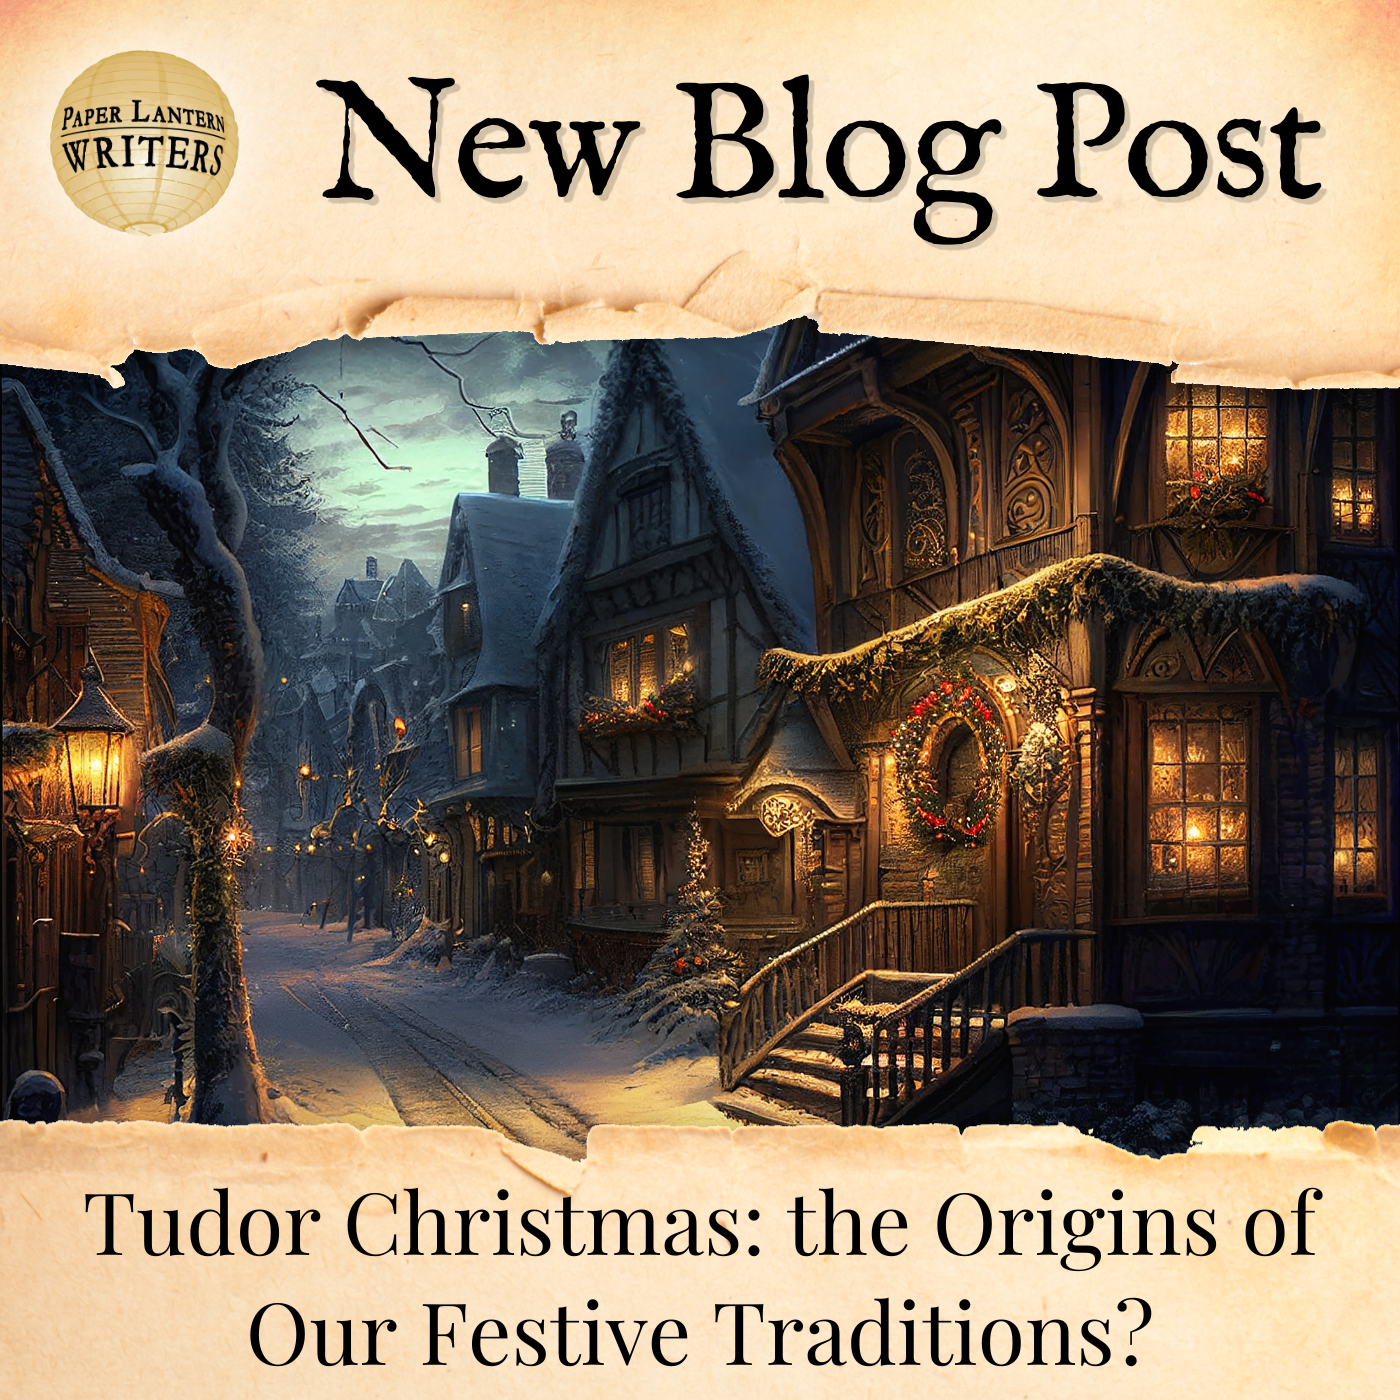 Tudor Christmas: the Origins of Our Festive Traditions?